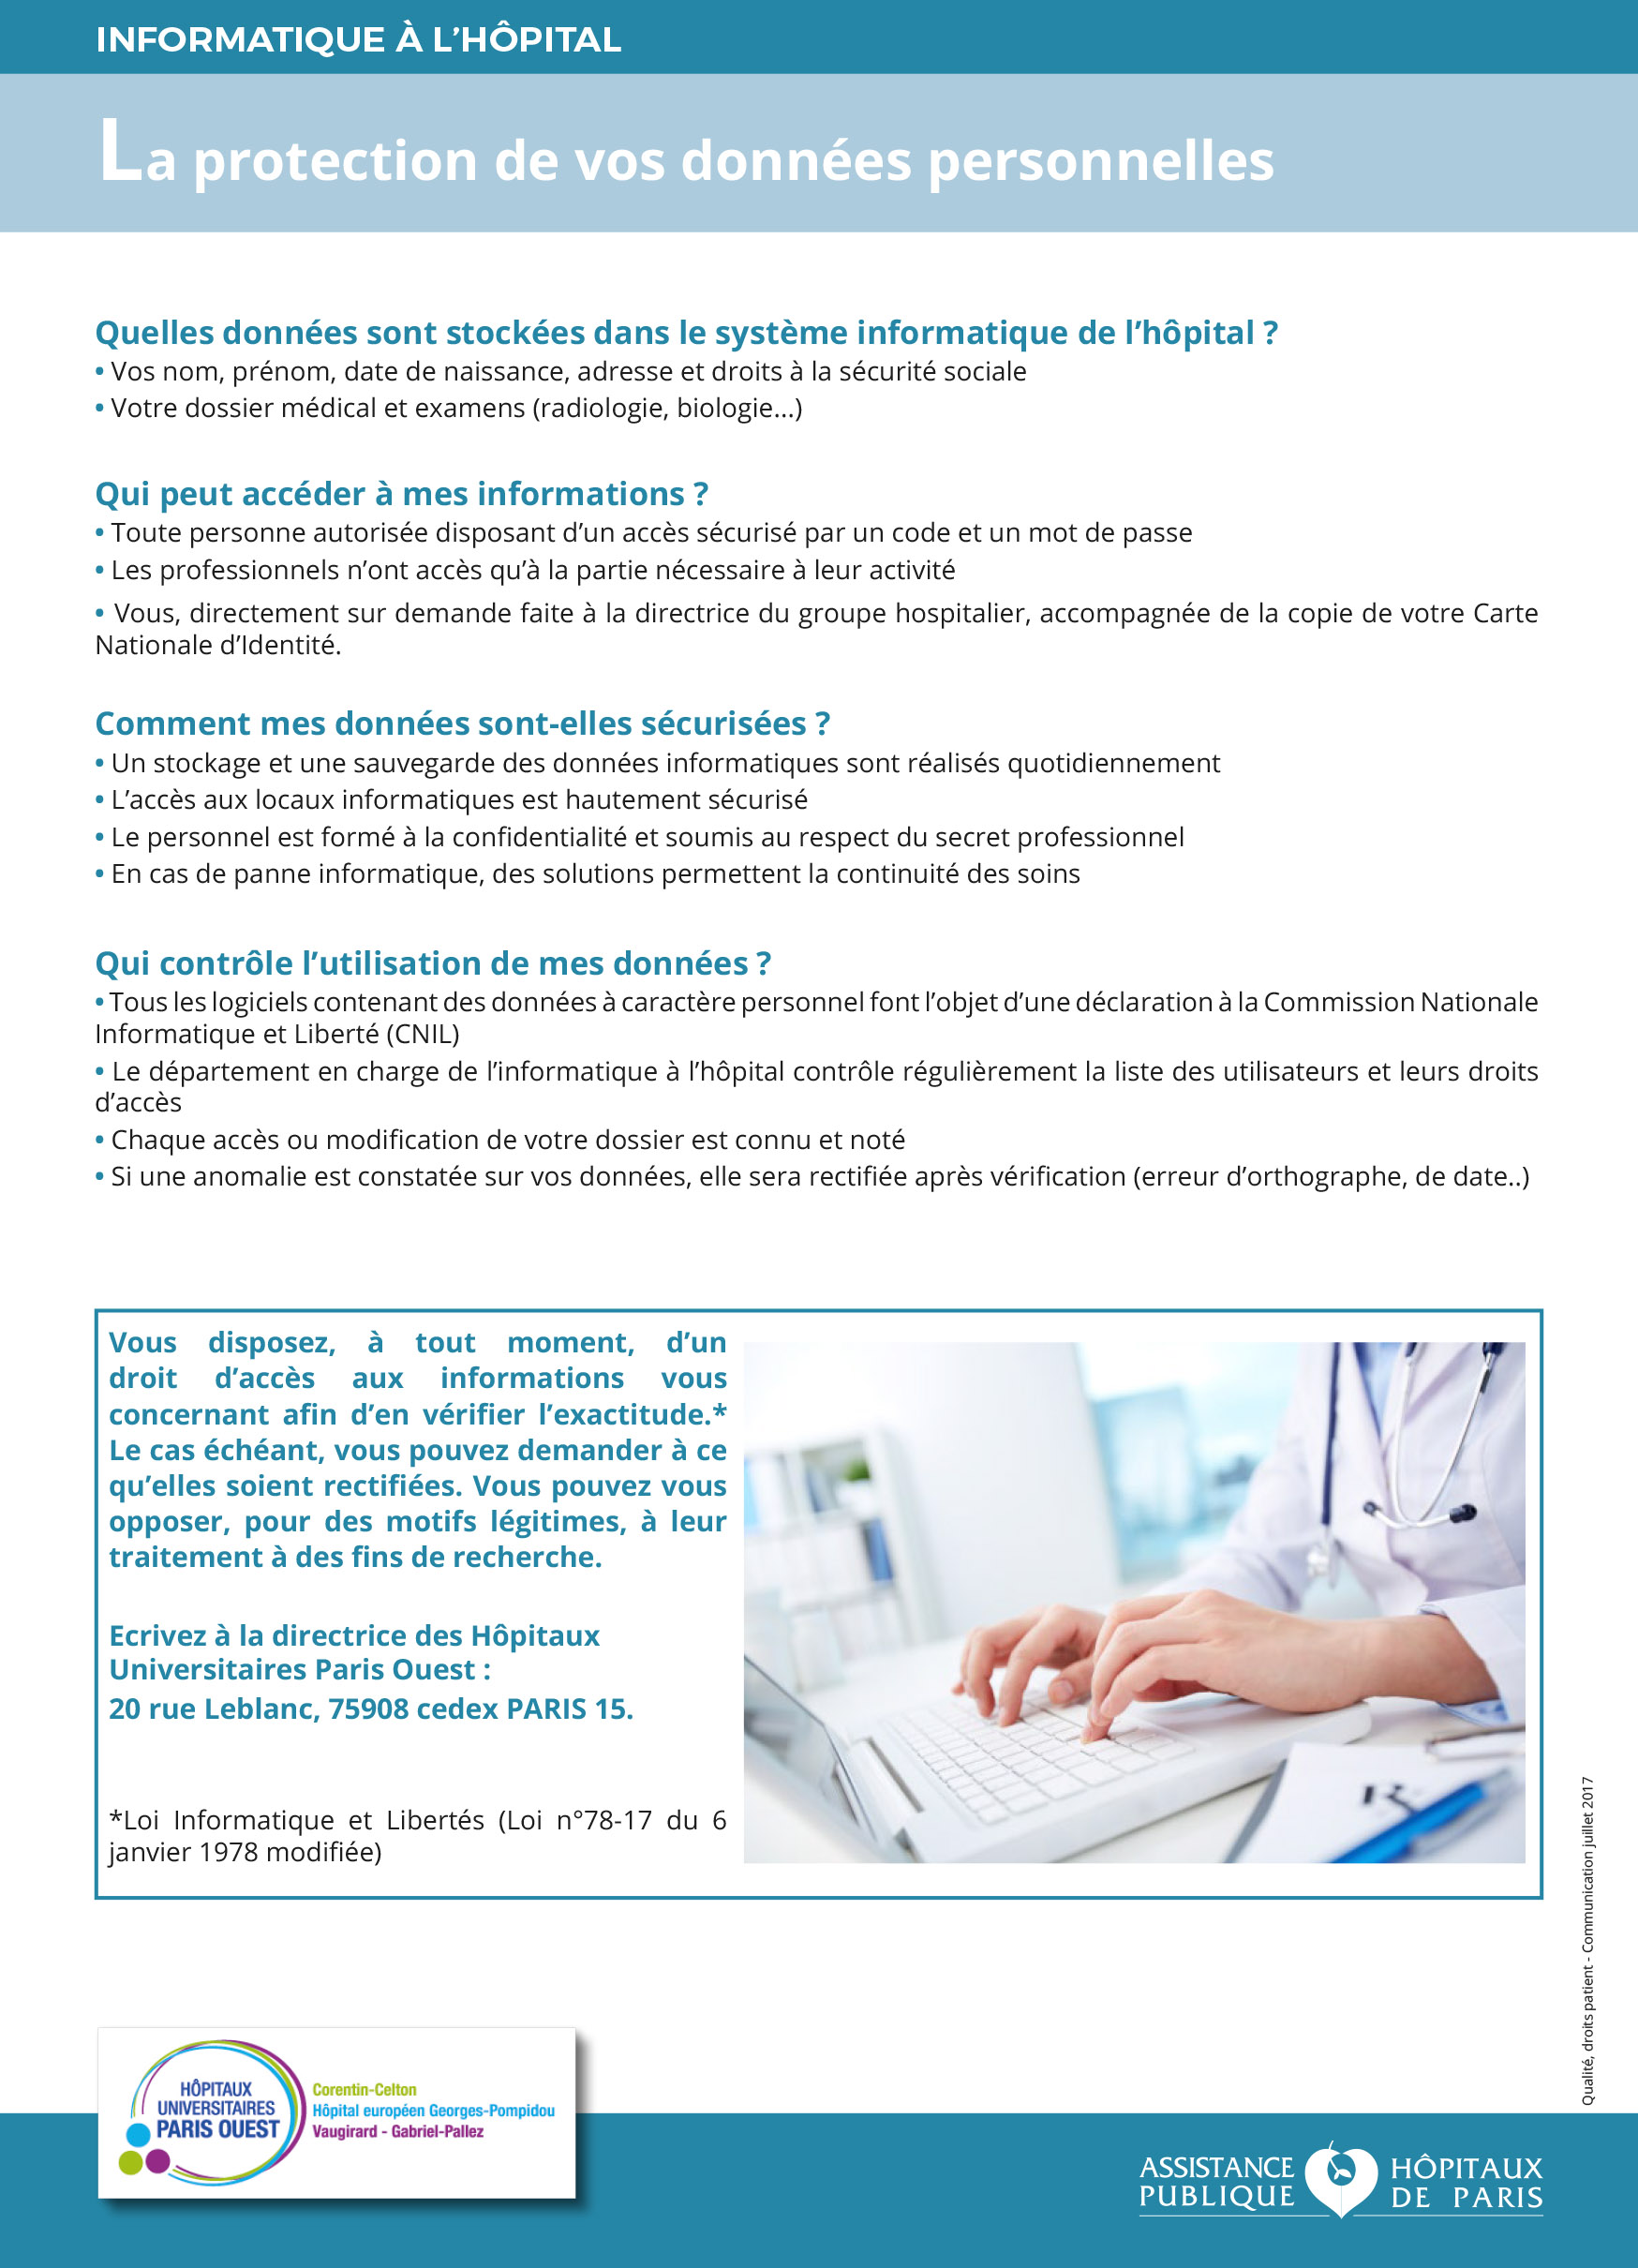 Affiche réglementaire RGPD relative à la protection des données de santé des patients de l'hôpital européen Georges-Pompidou